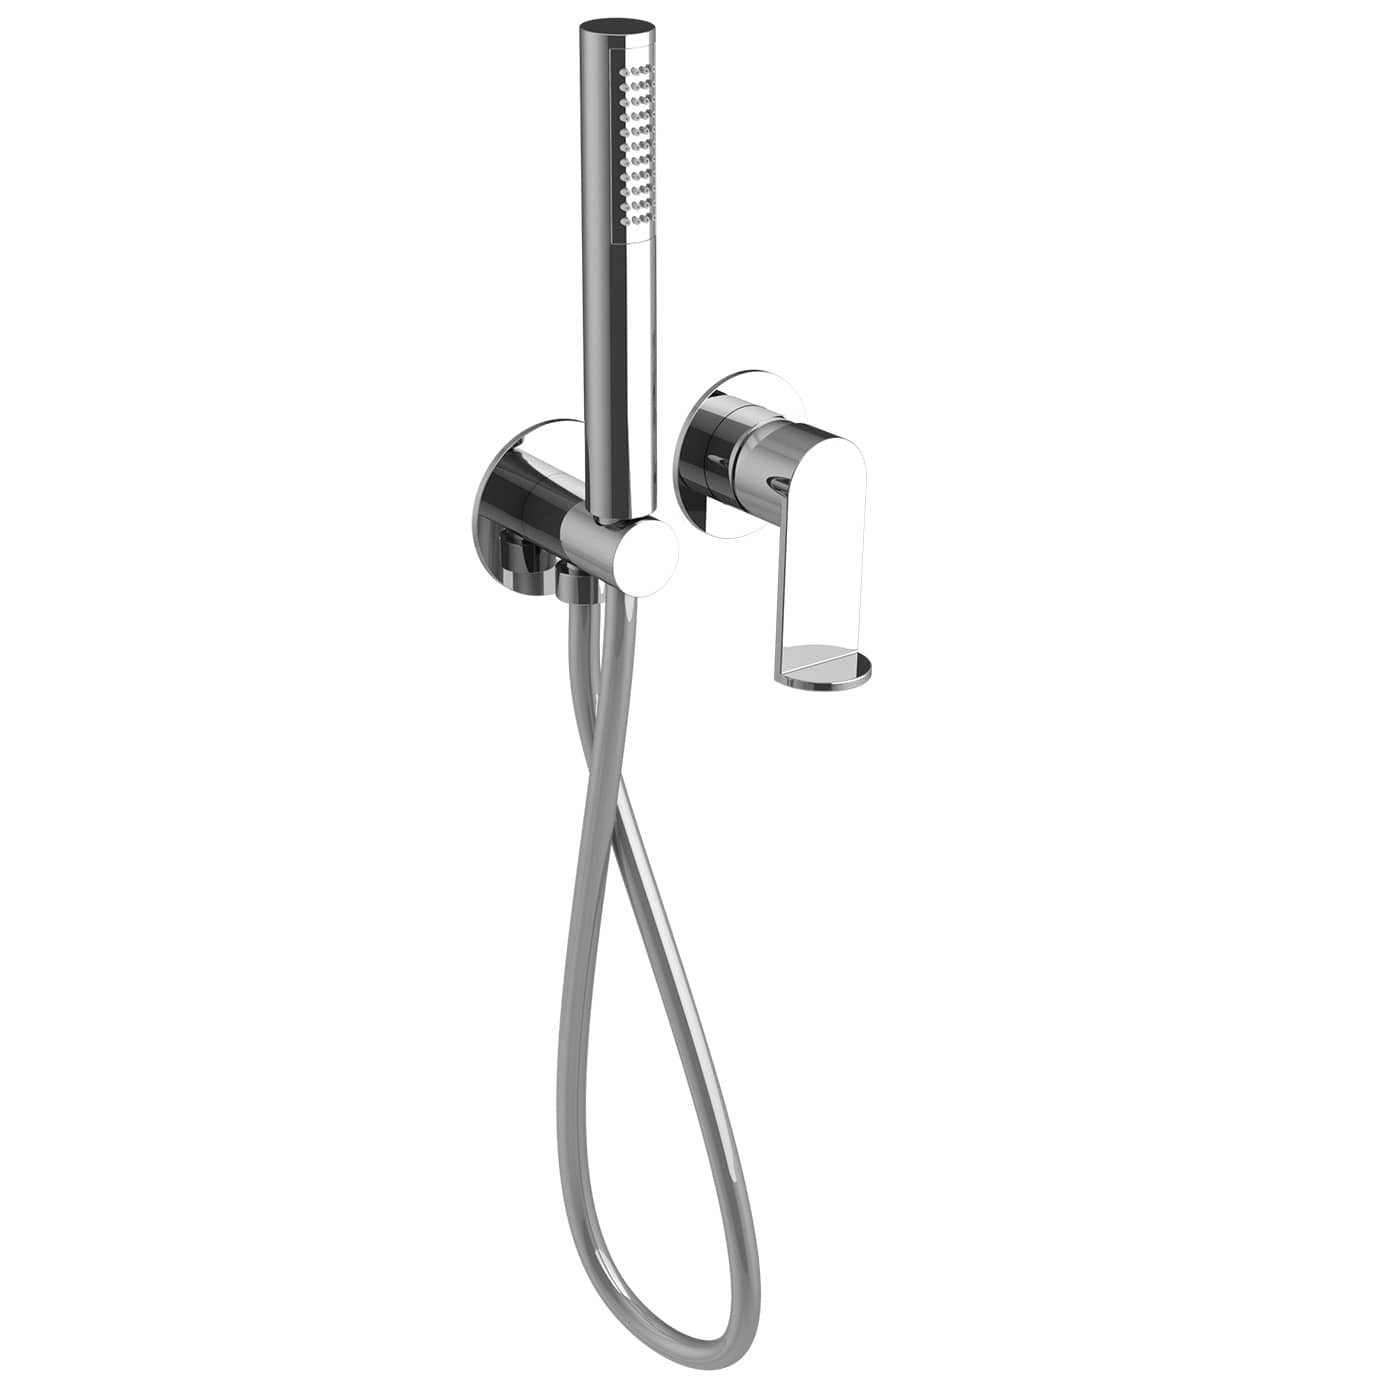 PUED130RO - Parti esterne per monocomando incasso doccia con kit doccia